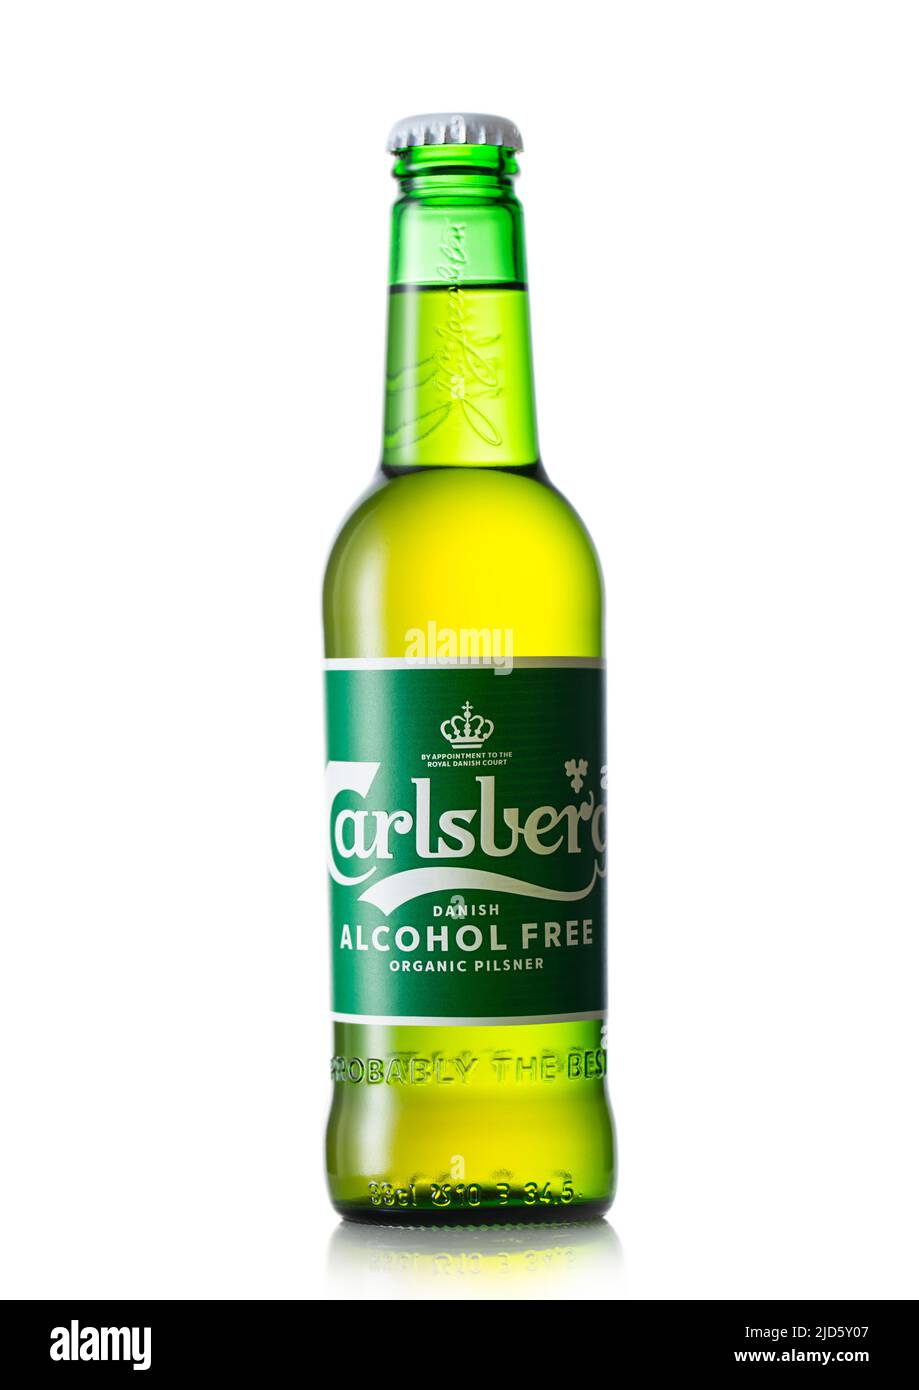 LONDRES, Royaume-Uni - 12 MAI 2022 : bière blonde biologique sans alcool Carlsberg sur blanc. Produit du Danemark Banque D'Images